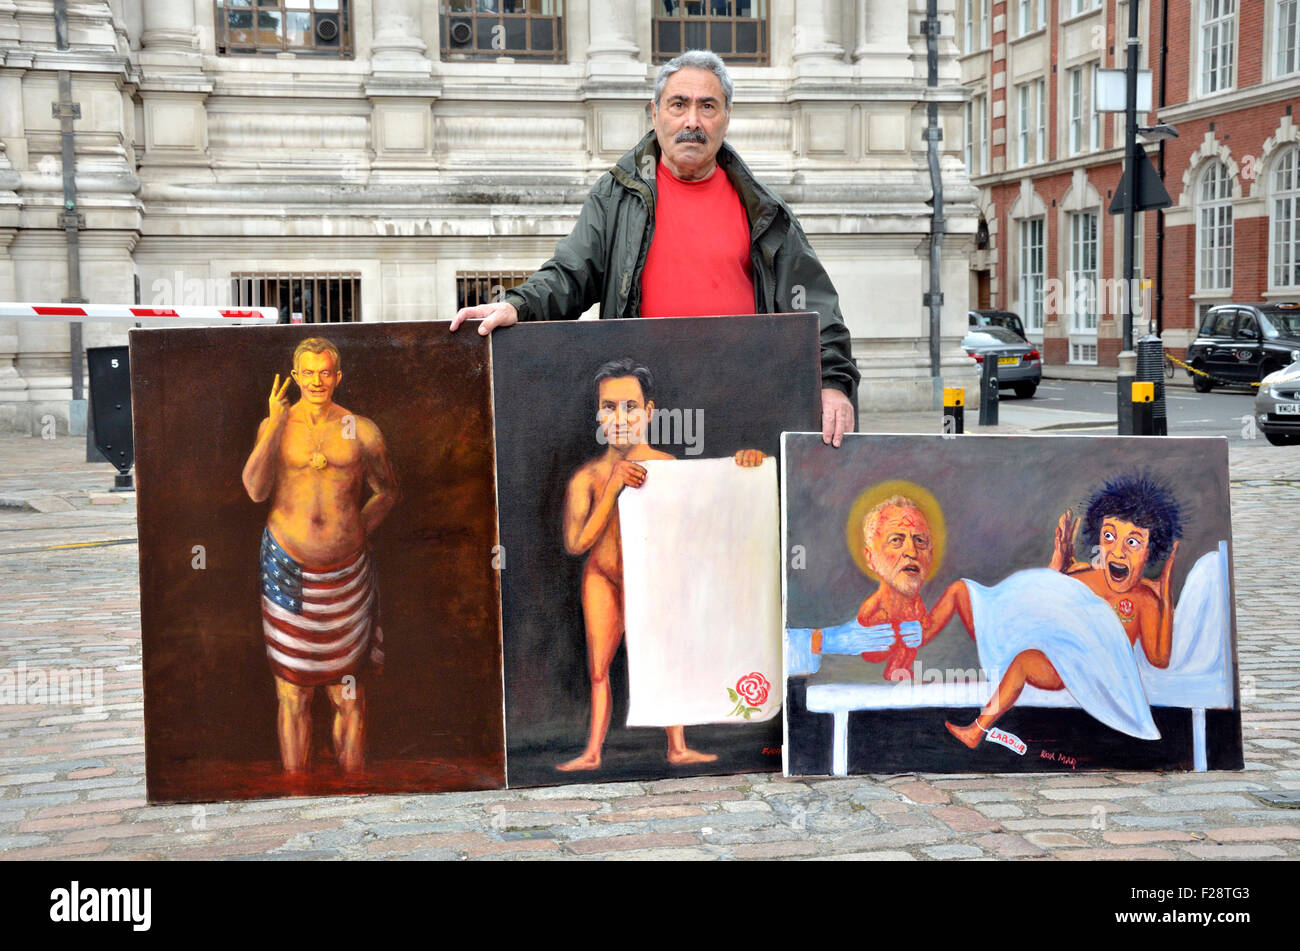 Kaya Mar, türkische satirische Zeichner, mit Bildern von Gewerkschaftsführer, außerhalb der Queen Elizabeth II Conference Centre, London Stockfoto